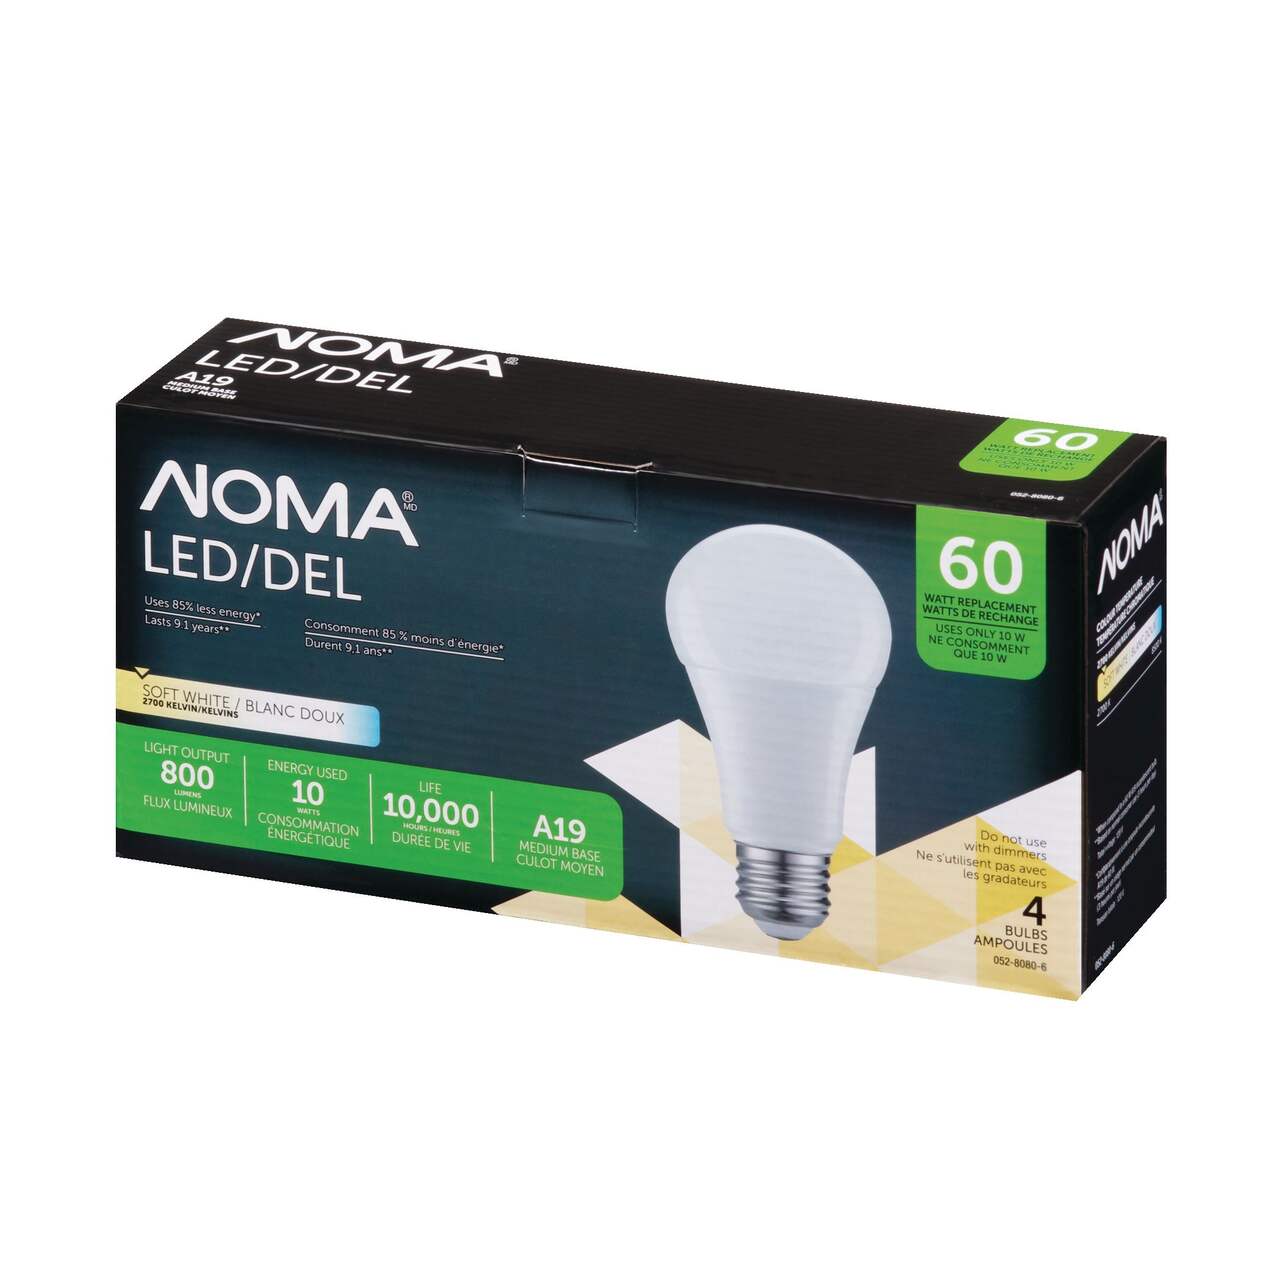 Ampoules pour projecteur à DEL non variable à culot E26 NOMA A19, 800  lumens, blanc doux, 60 W, paq. 4